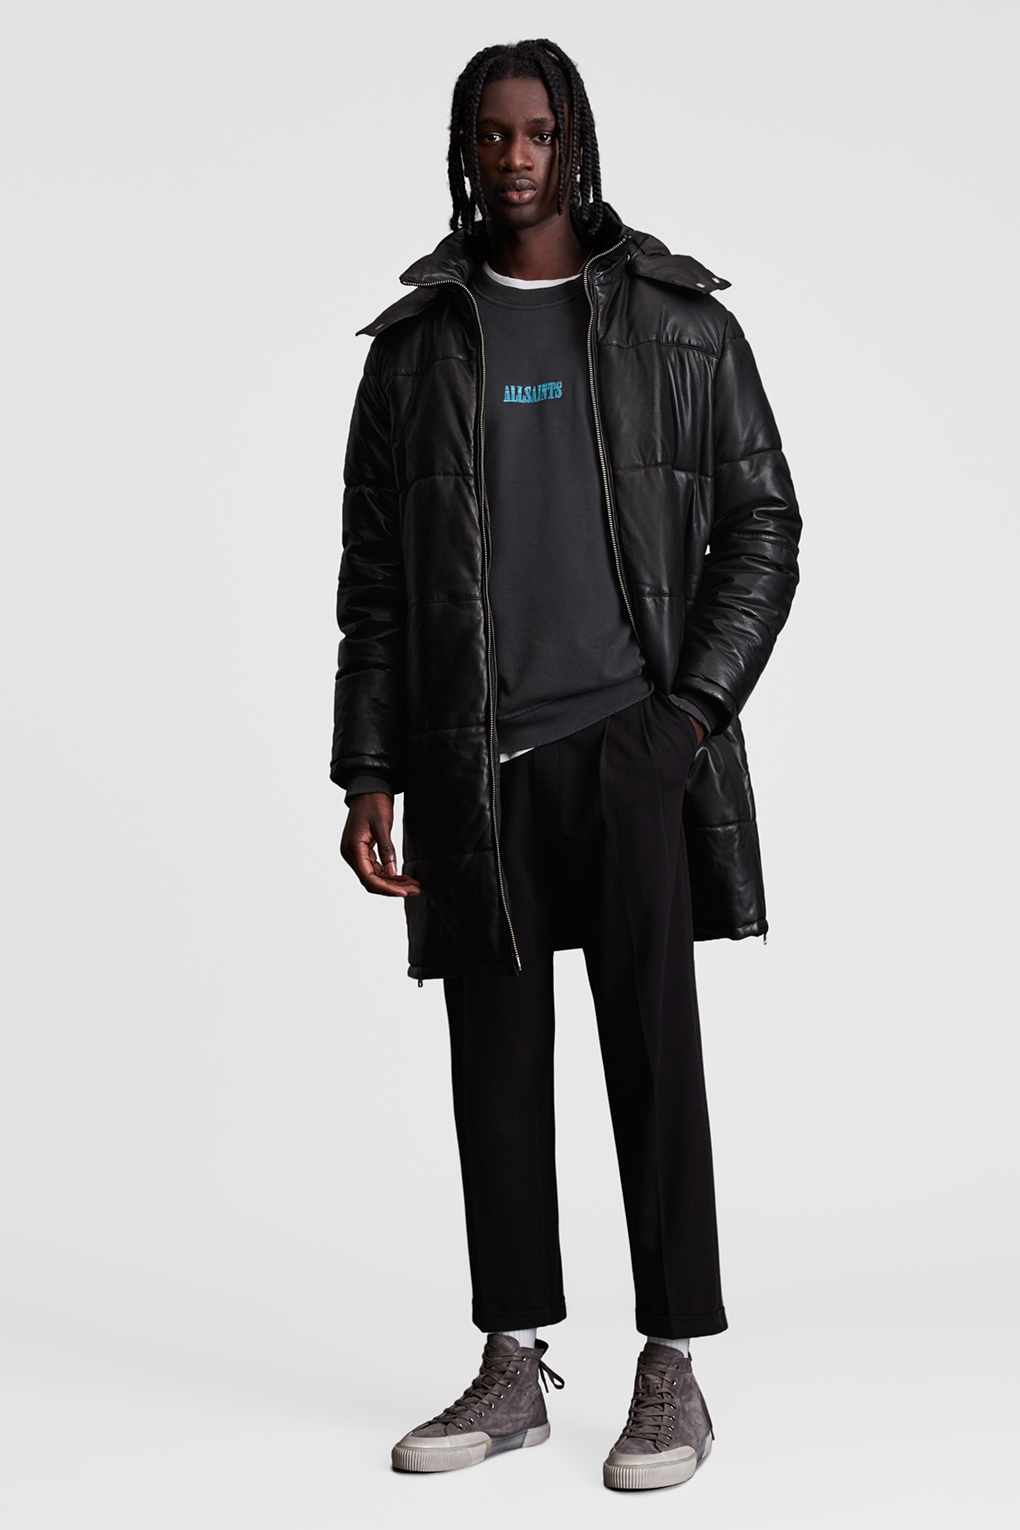 Кожаная куртка мужская Allsaints ML088V черная XL